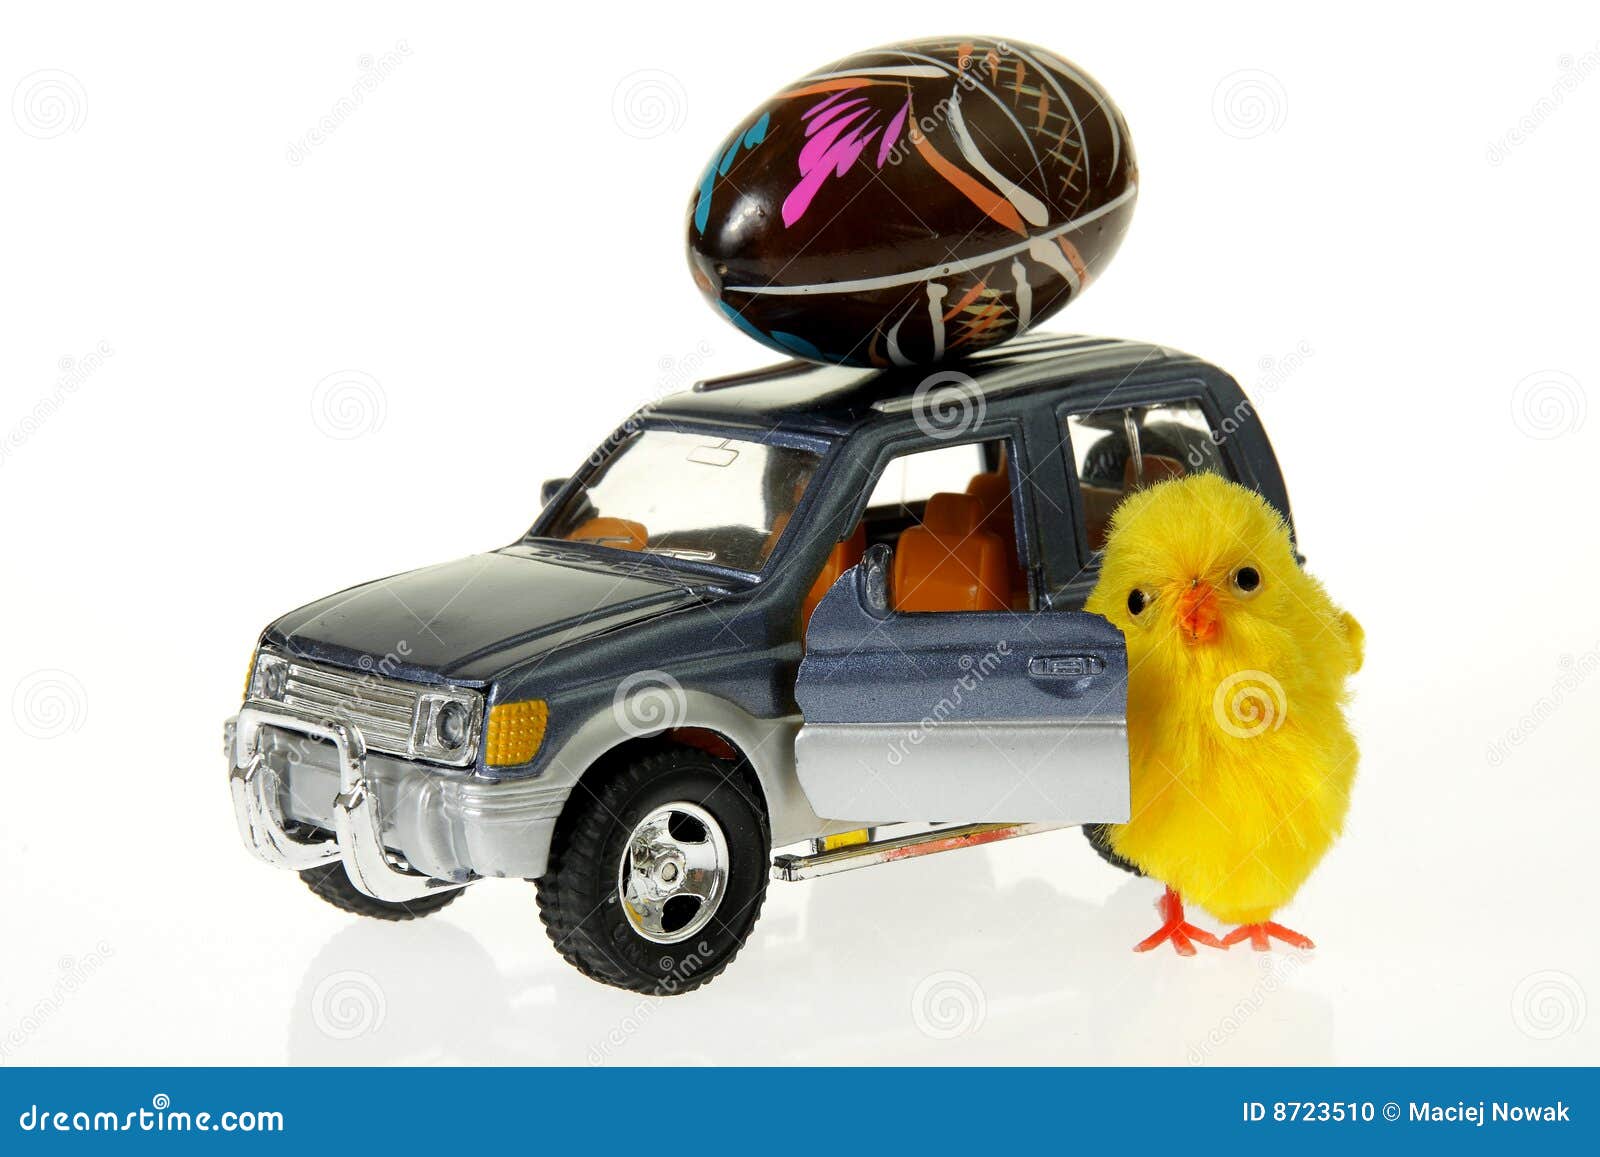 Реклама машинки для яиц. Цыпленок в машину. Пасха авто. Пасха с машиной. Пасхальные яйца в машине.